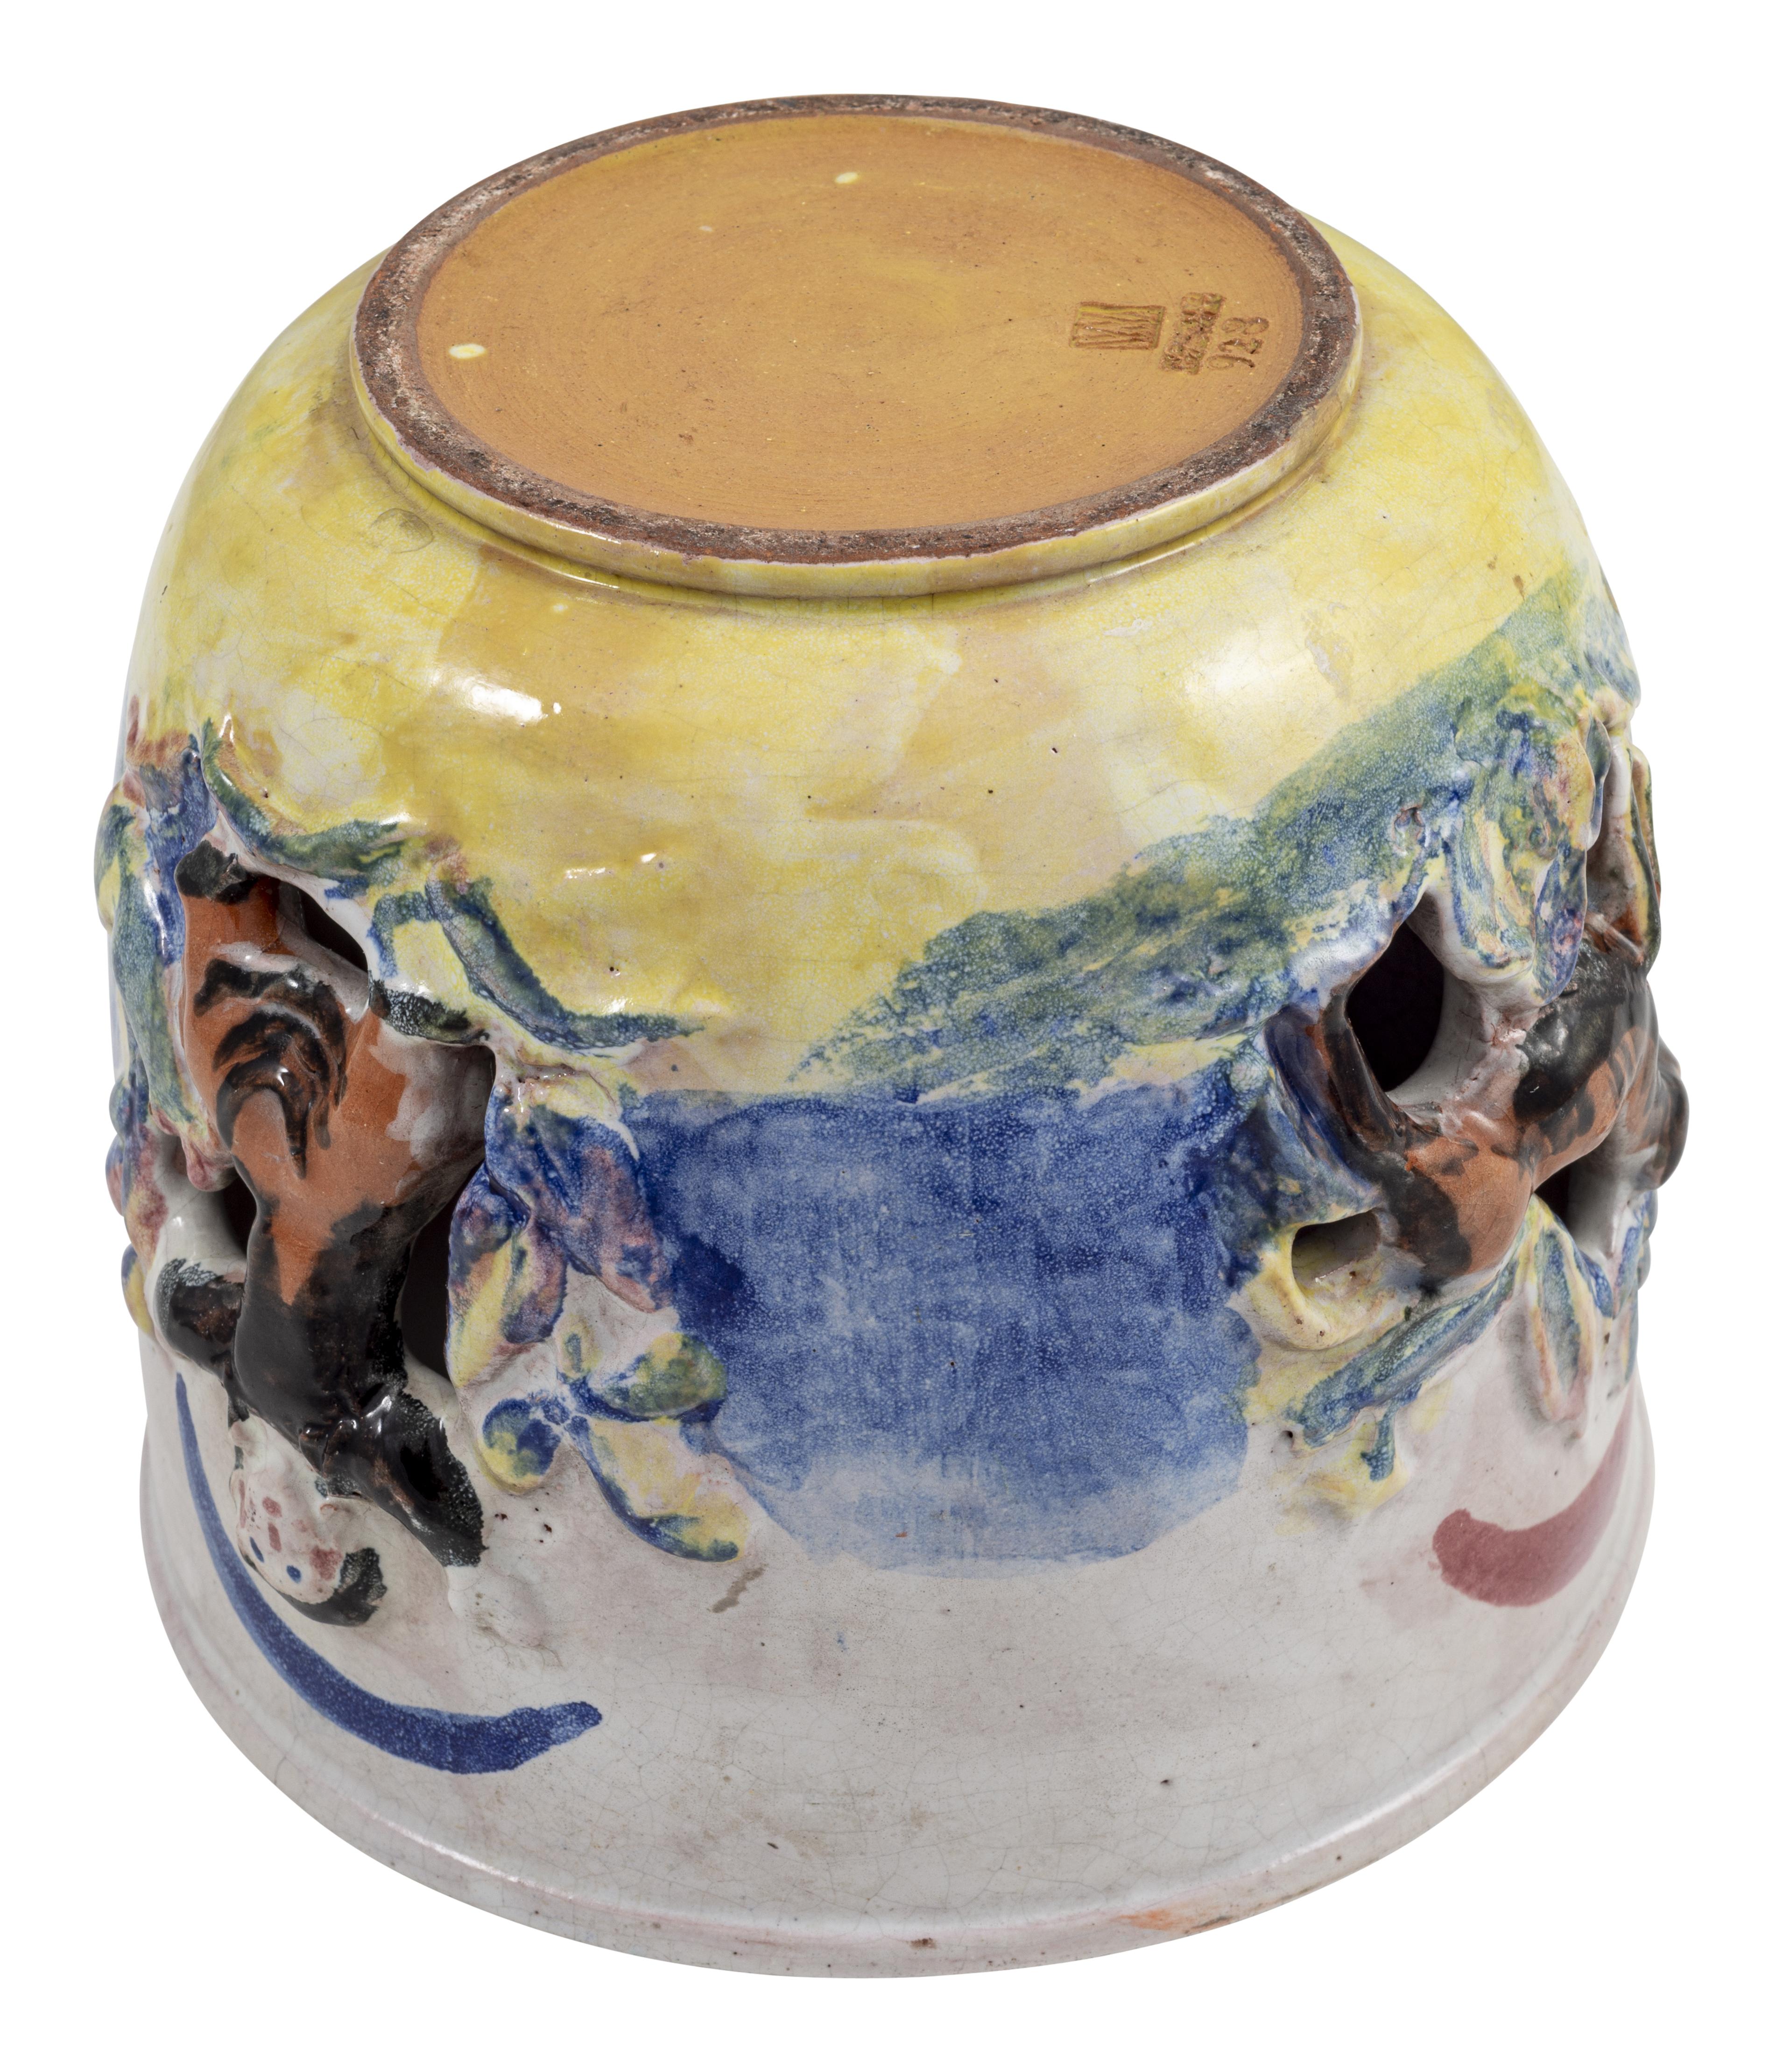 Jugendstil Ceramic Vase Susi Singer Wiener Werkstatte circa 1928 Expressive Ceramics Blue